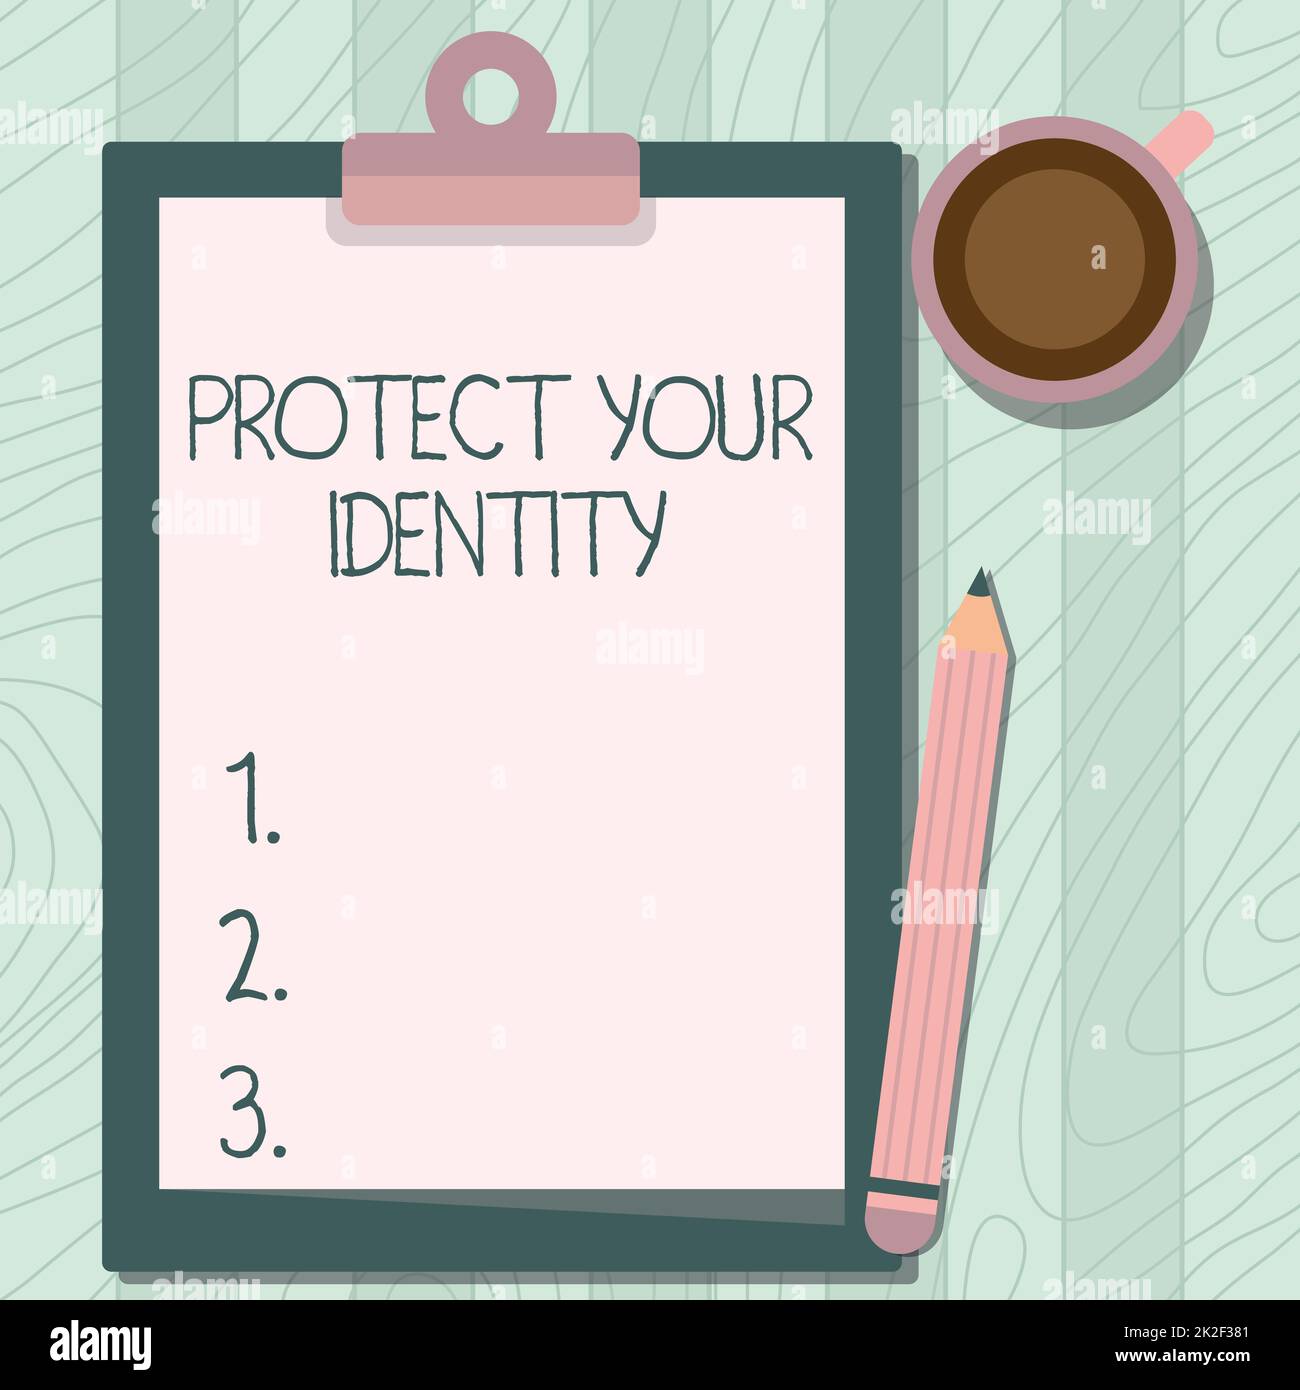 Textzeichen mit „Protect Your Identity“. Geschäftsidee Datenschutz in Ihren Social-Media-Konten aktivieren Abbildung: Bleistift auf dem Tisch neben der Zwischenablage und der Kaffeetasse. Stockfoto